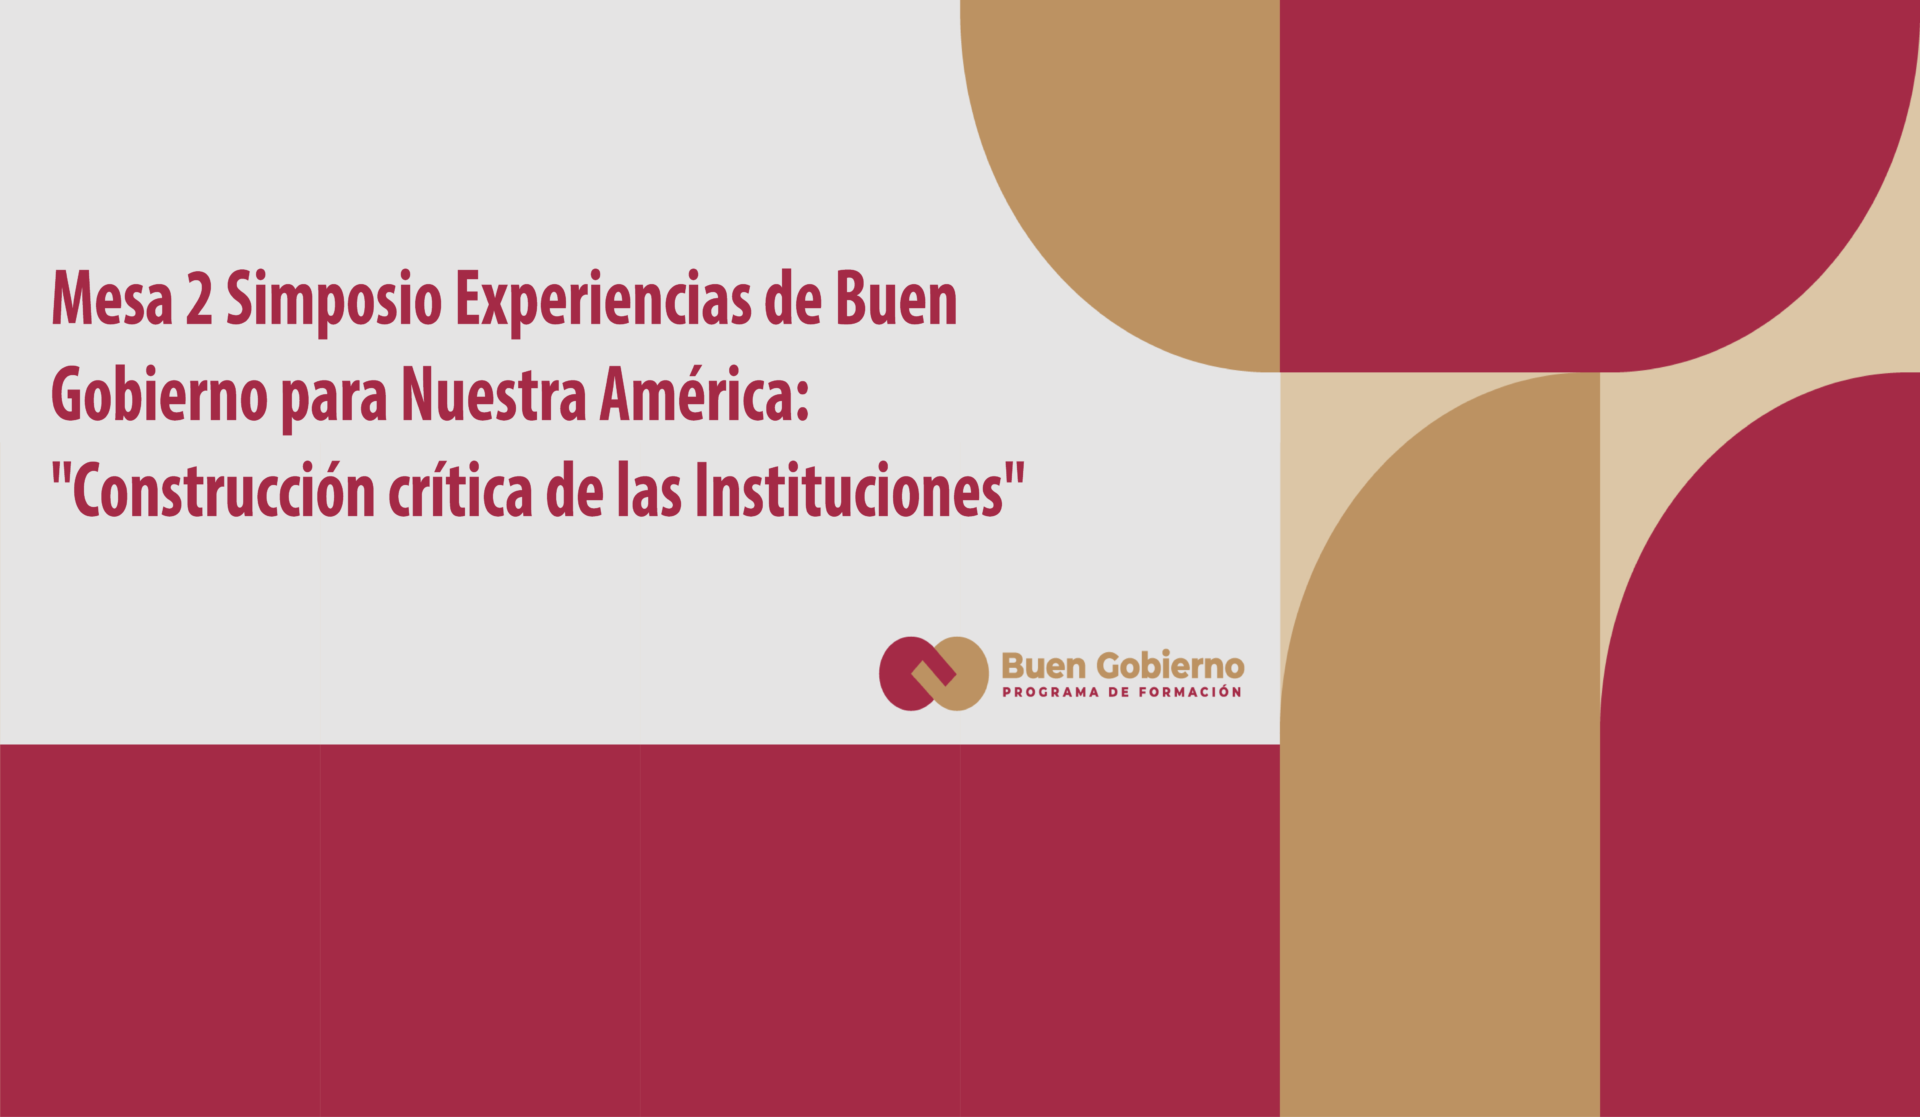 Mesa 2 Simposio Experiencias de Buen Gobierno para Nuestra América: “Construcción crítica de las Instituciones”